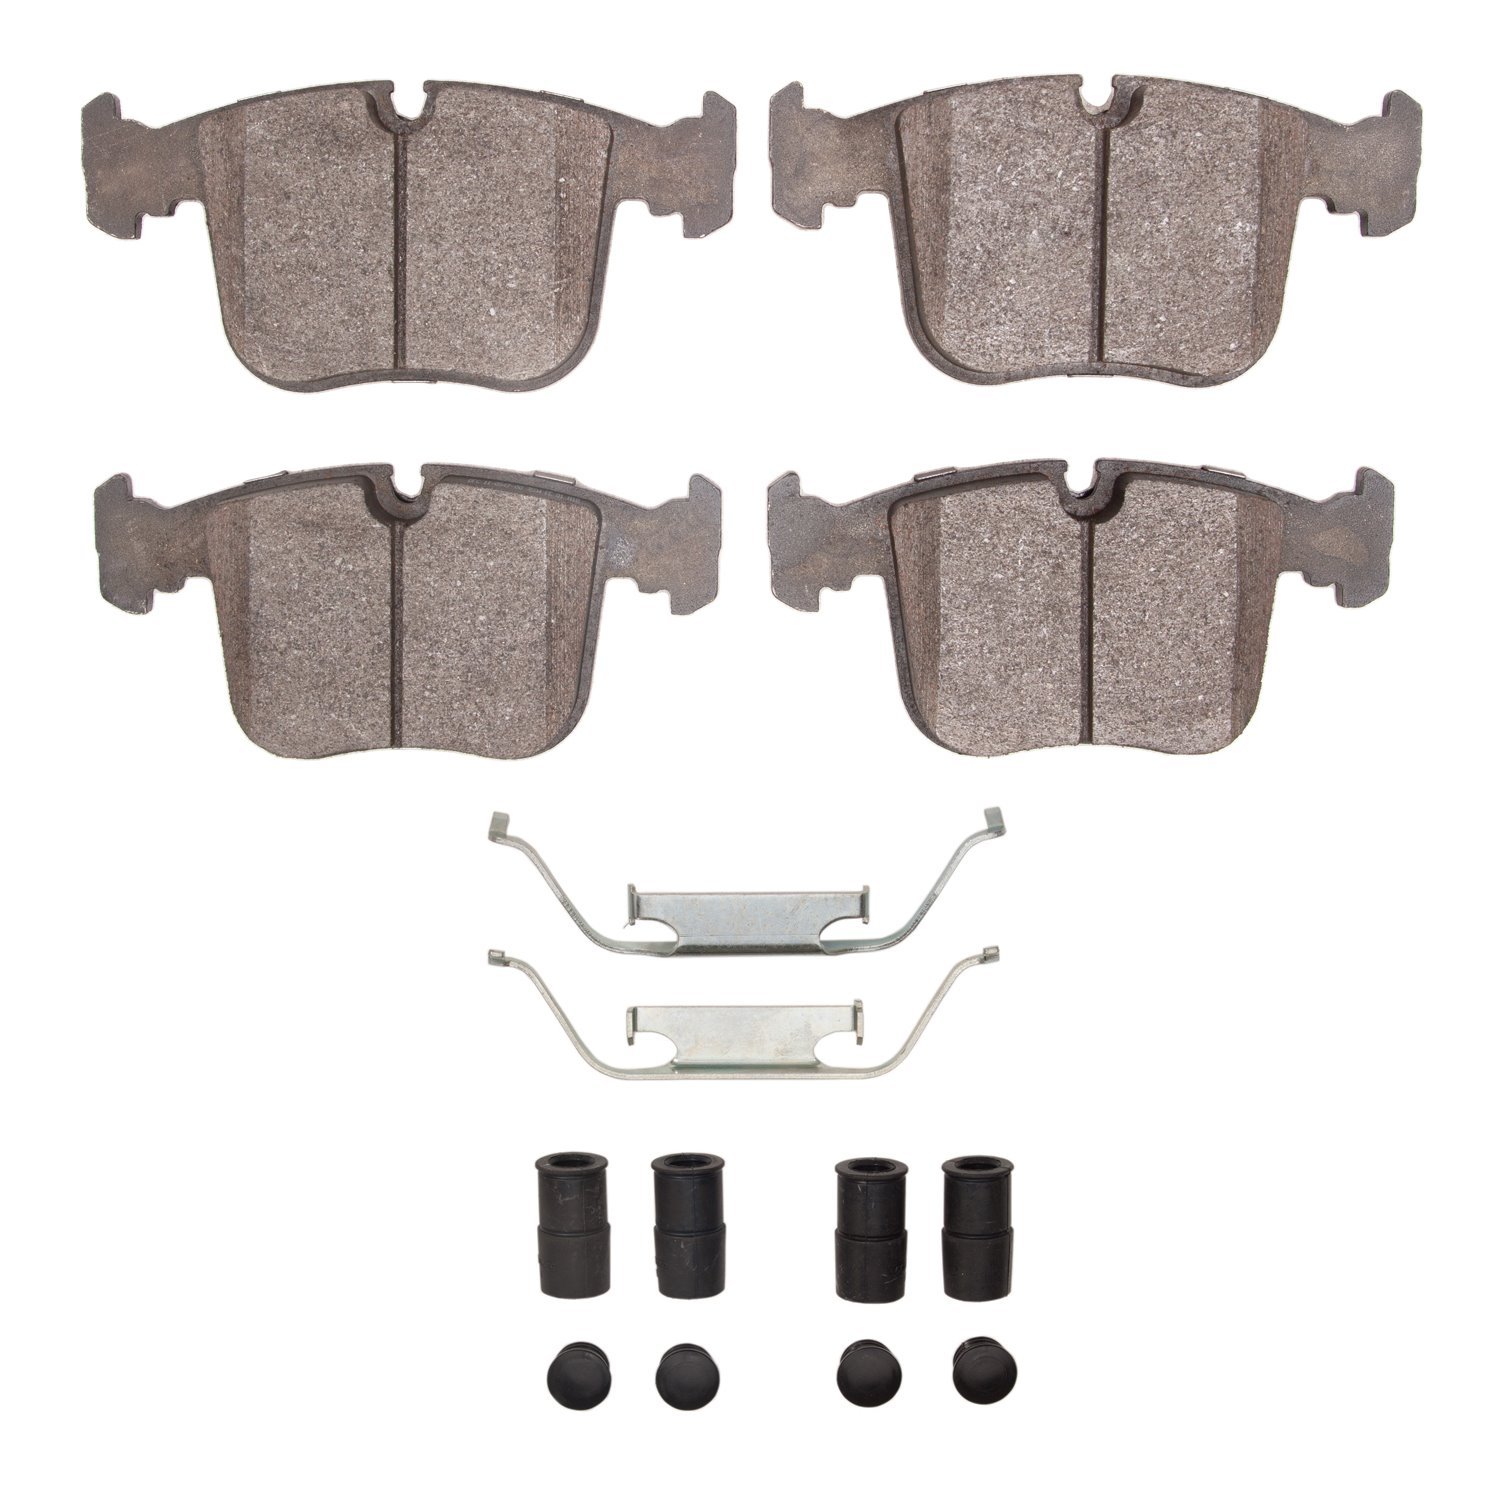 Semi-Metallic Brake Pads & Hardware Kit, 1991-1995 BMW, Position: Front